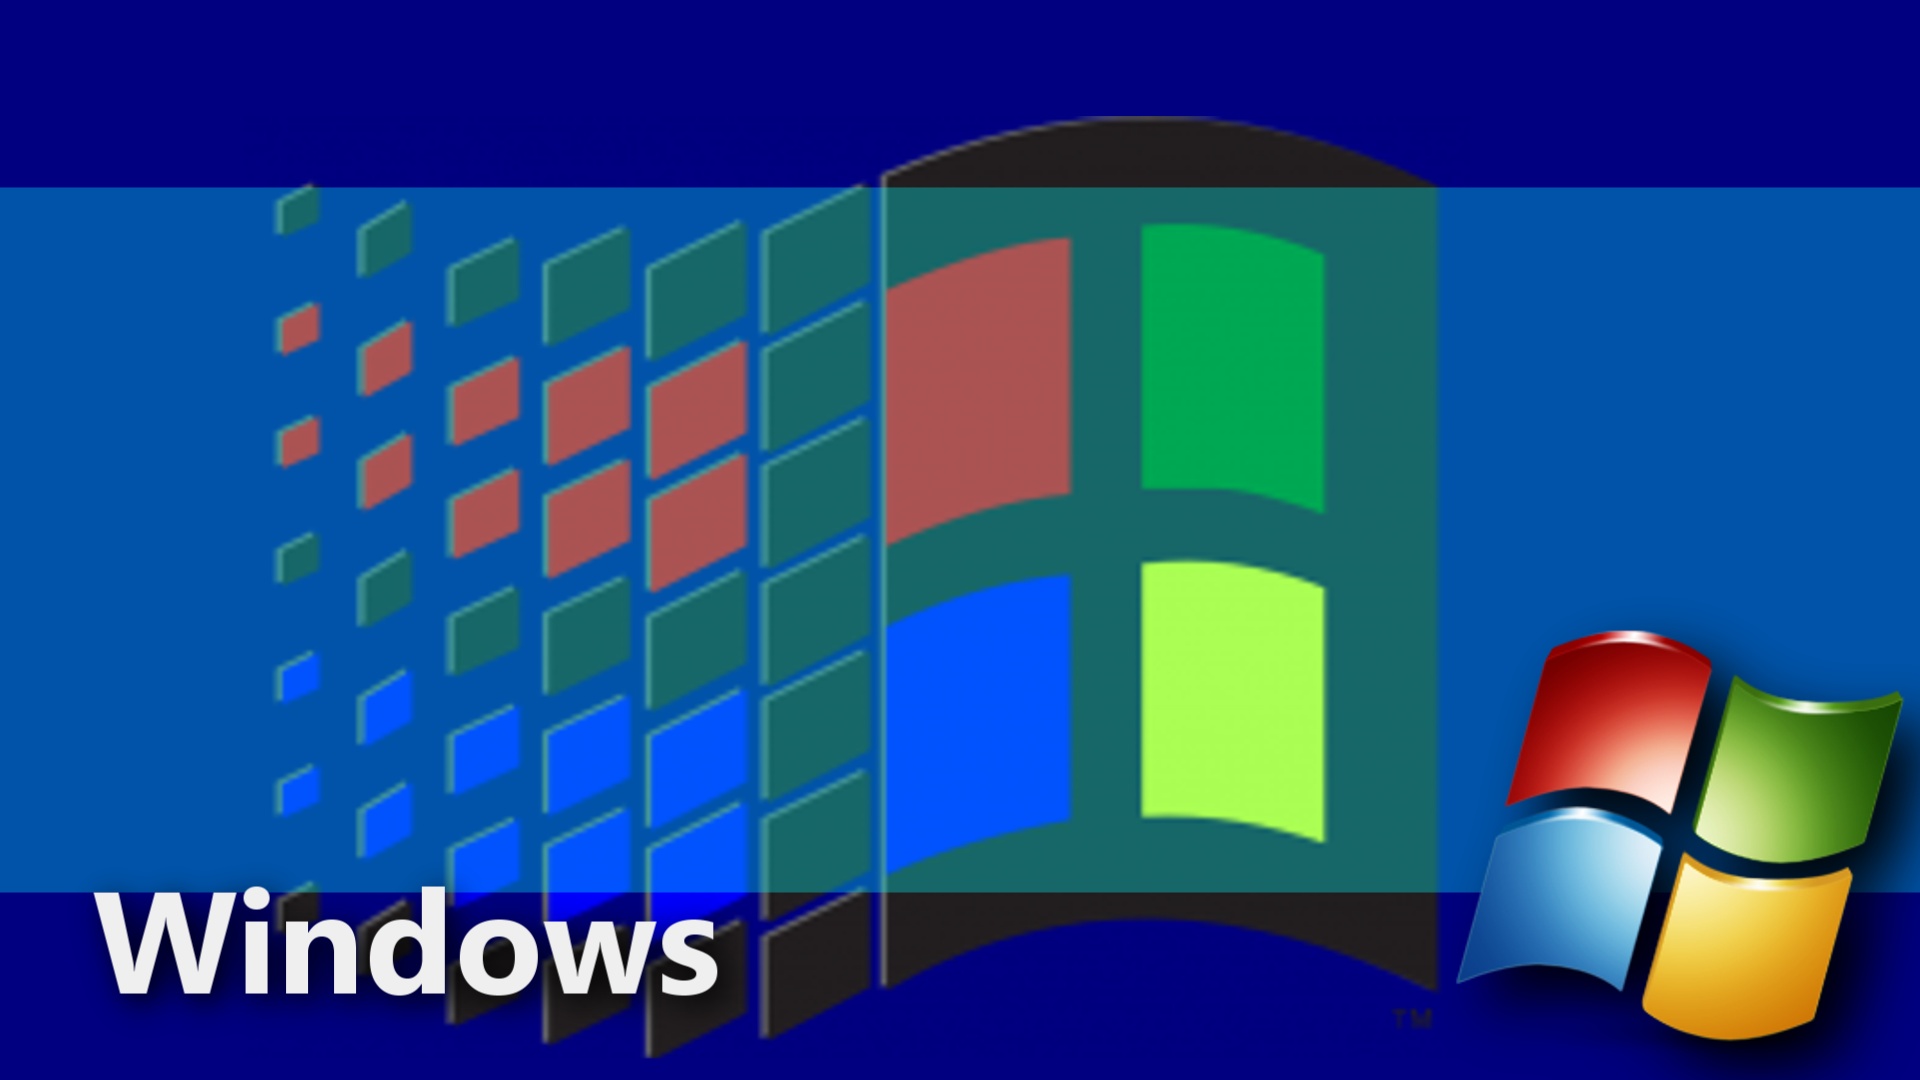 Windows Nt And Wallpaper By Windows7starterfan